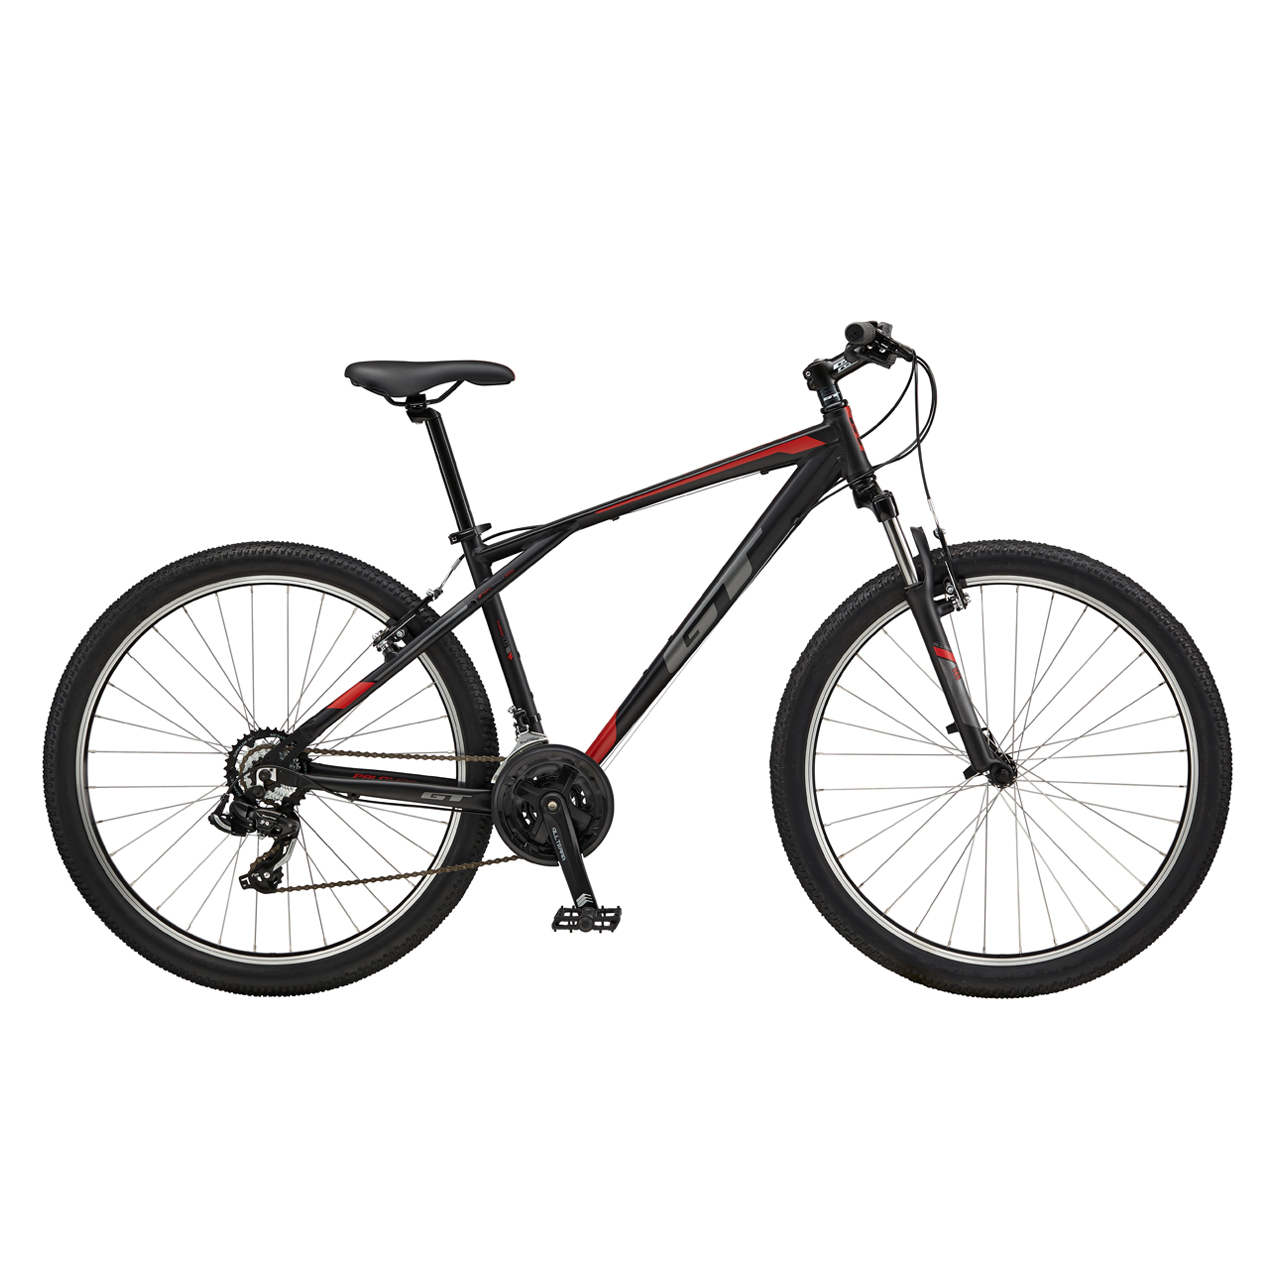 دوچرخه کوهستان جی تی Palomar Al سایز 27.5 رنگ مشکی2017